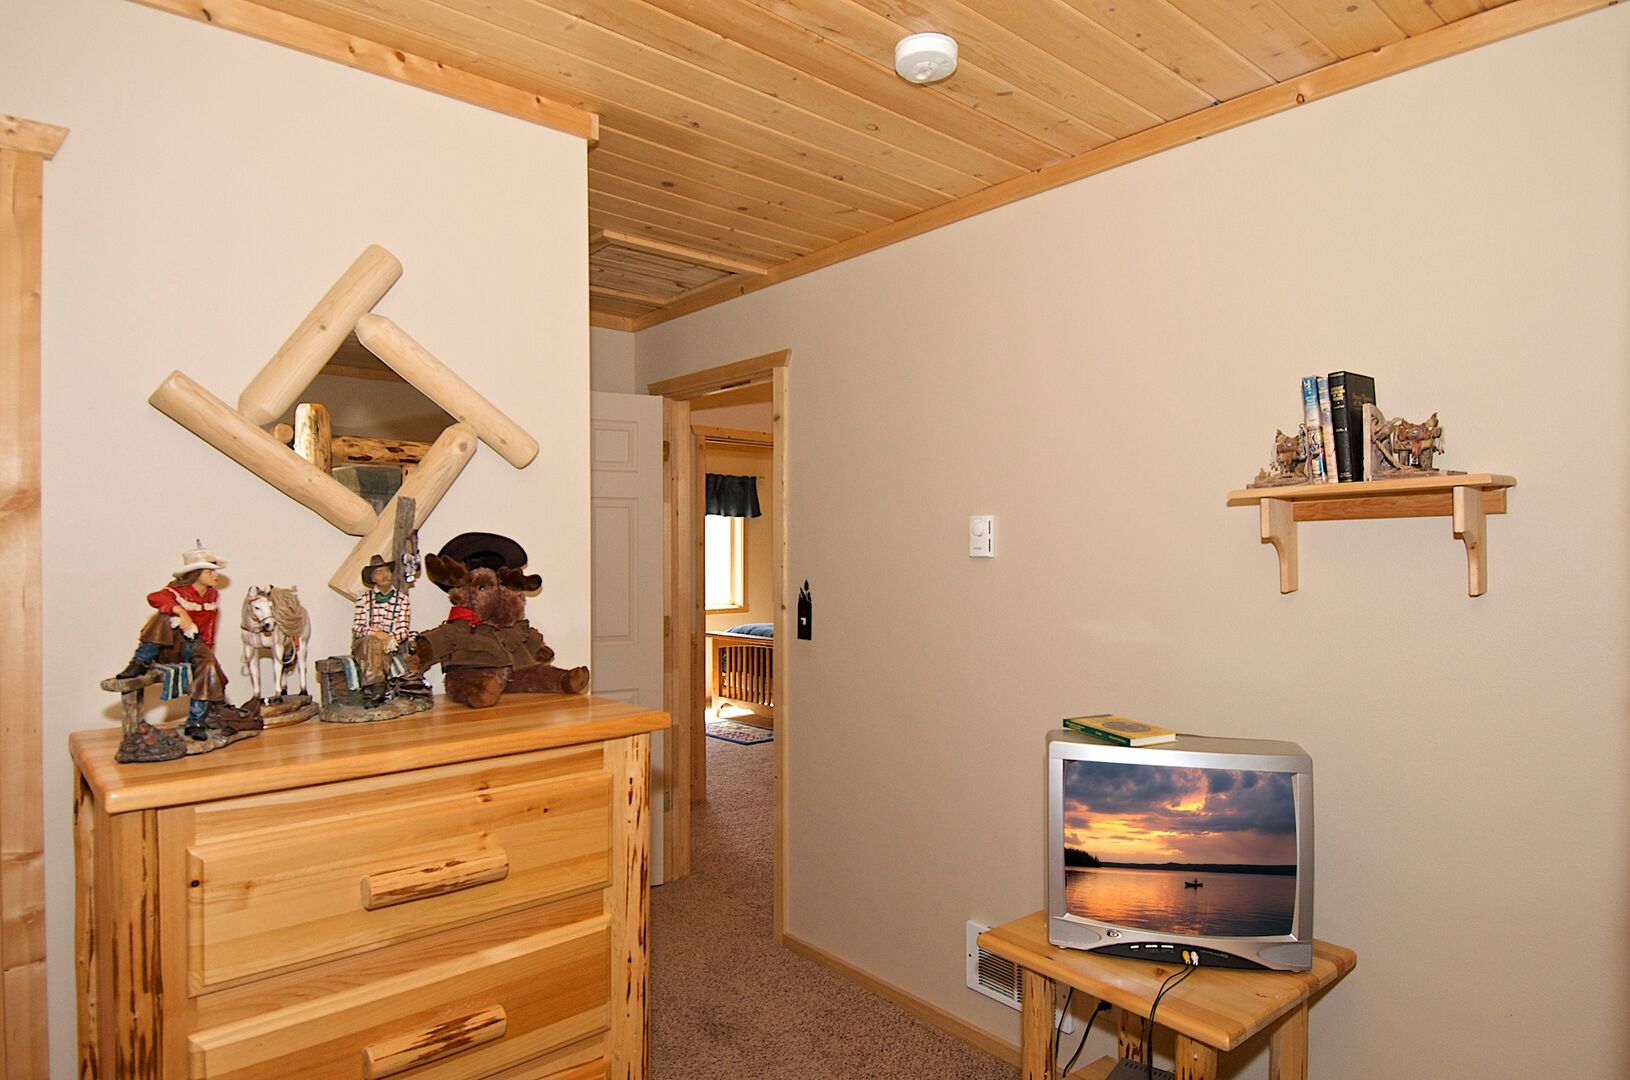 Wagon Wheel ~ bedroom #1 w/ a double over double bunk and a single over double bunk and private ensuite bathroom